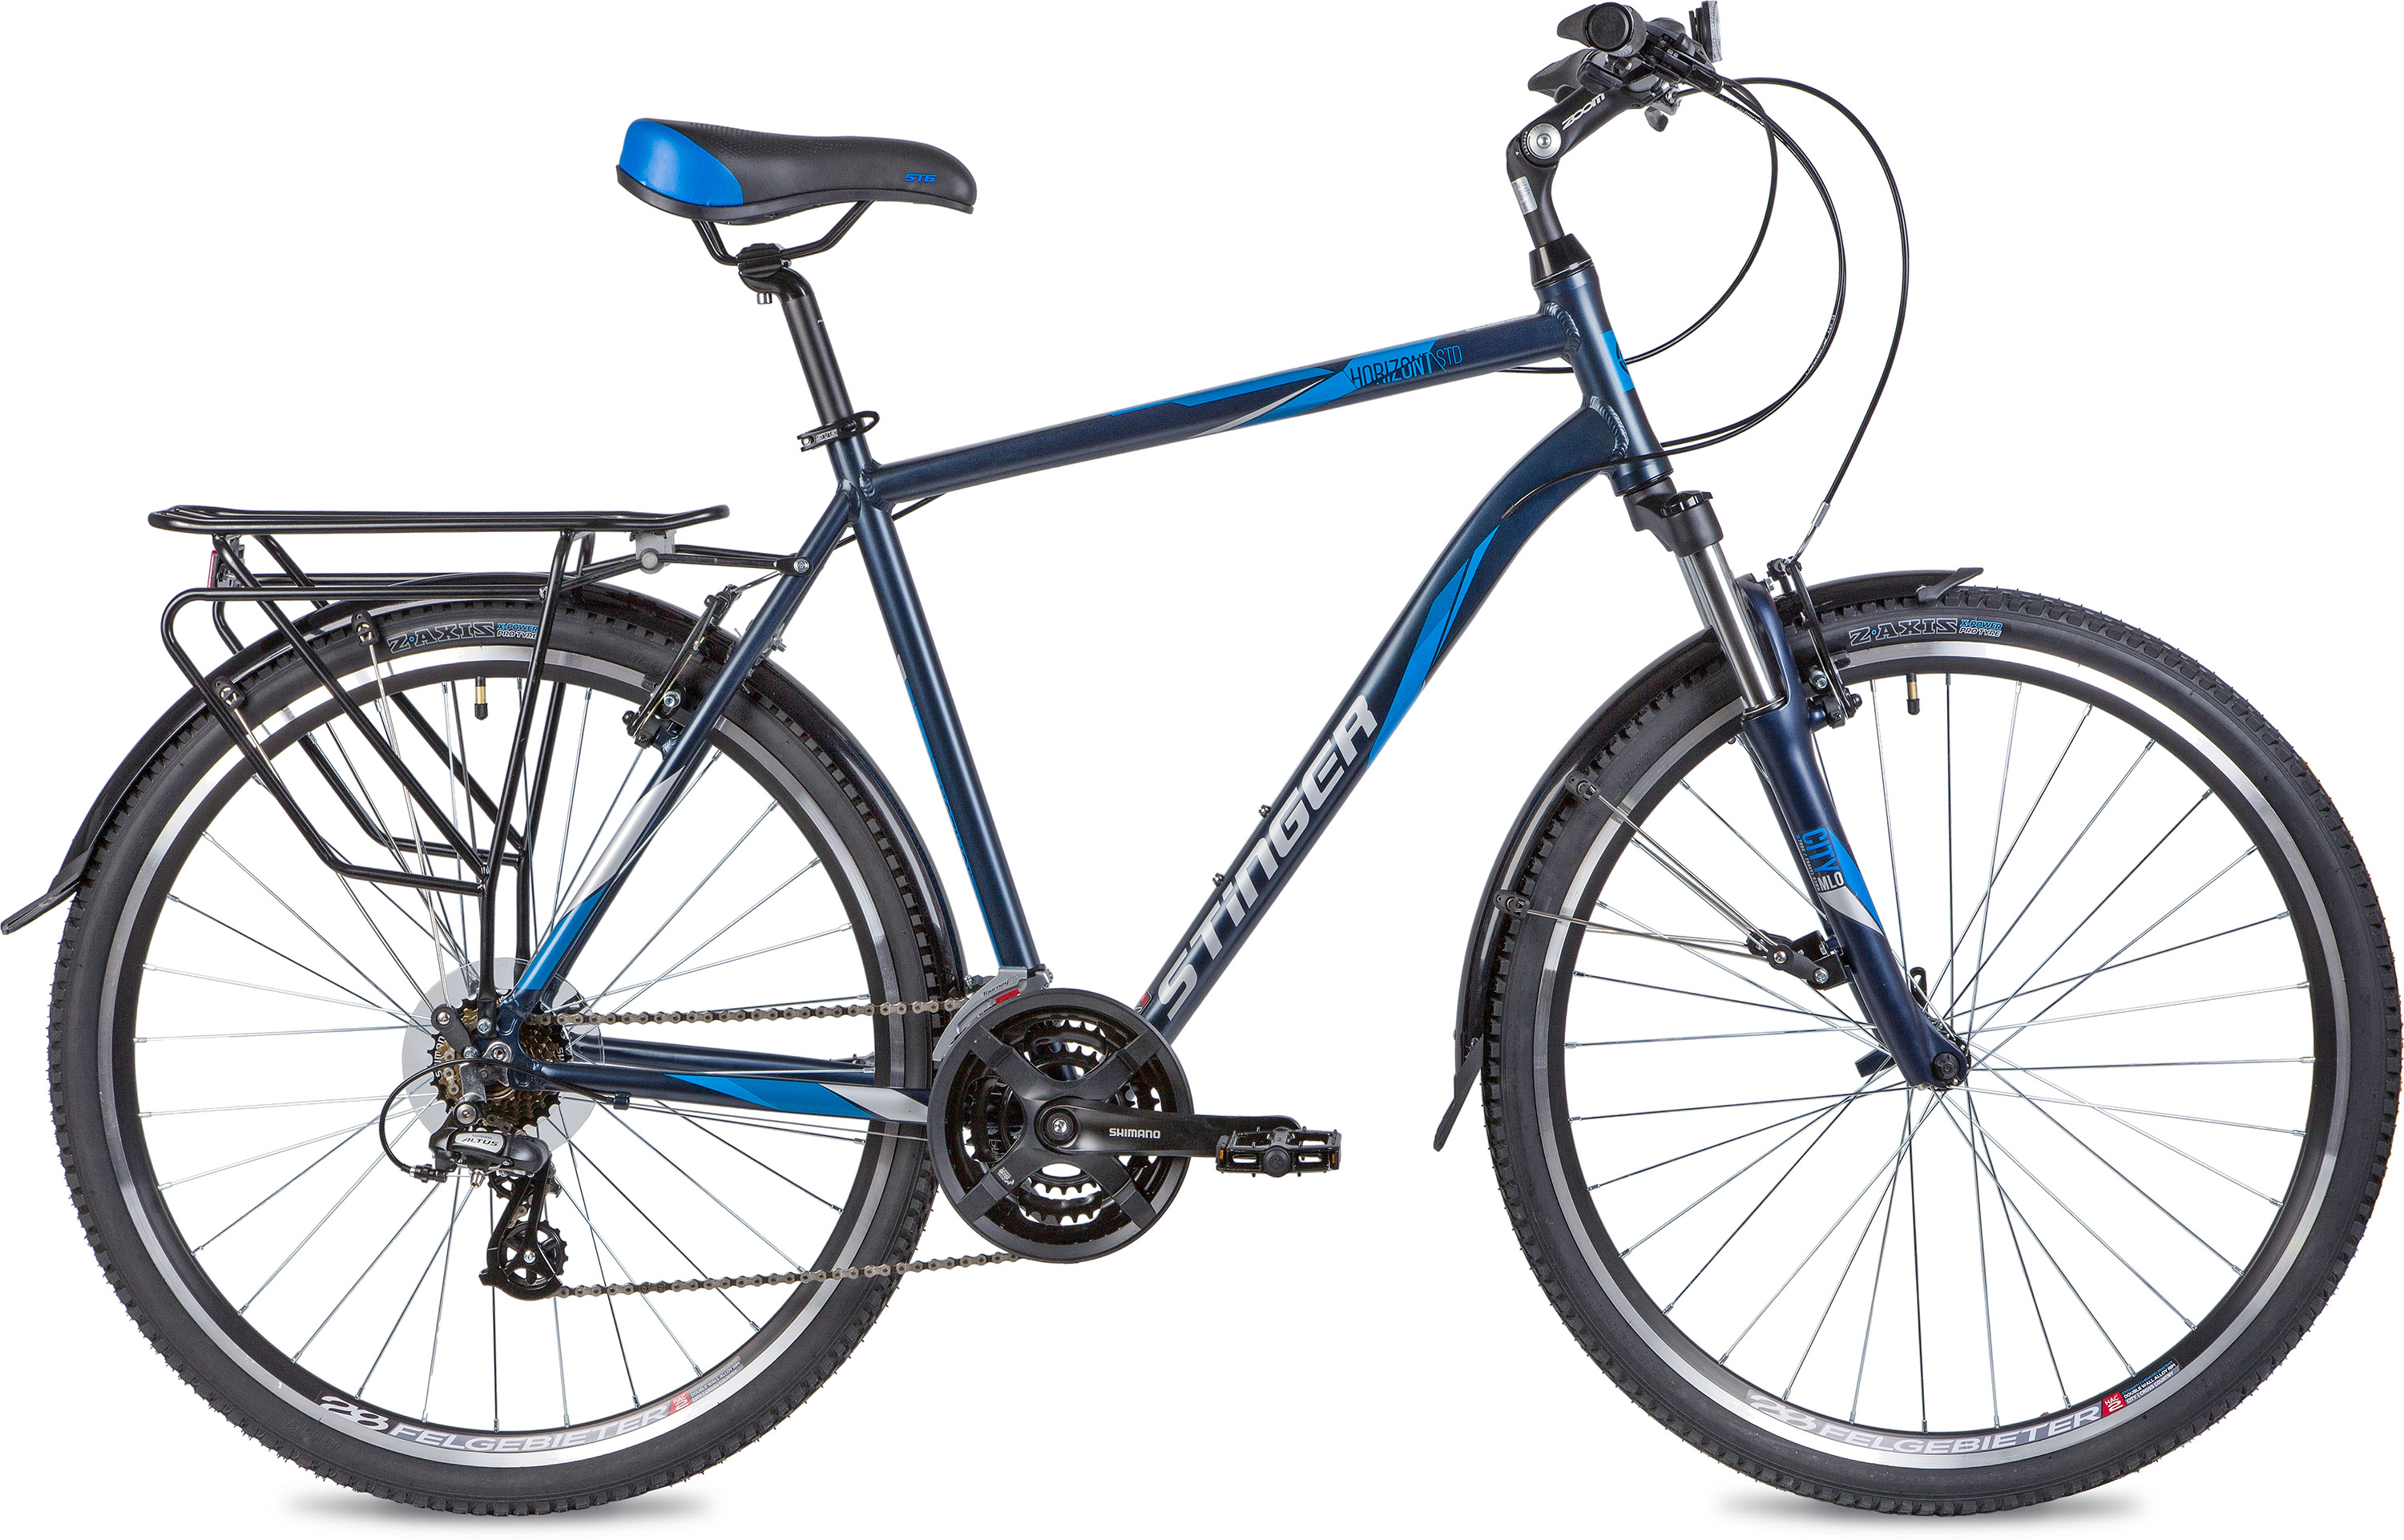  Отзывы о Городском велосипеде Stinger Horizont STD 2020